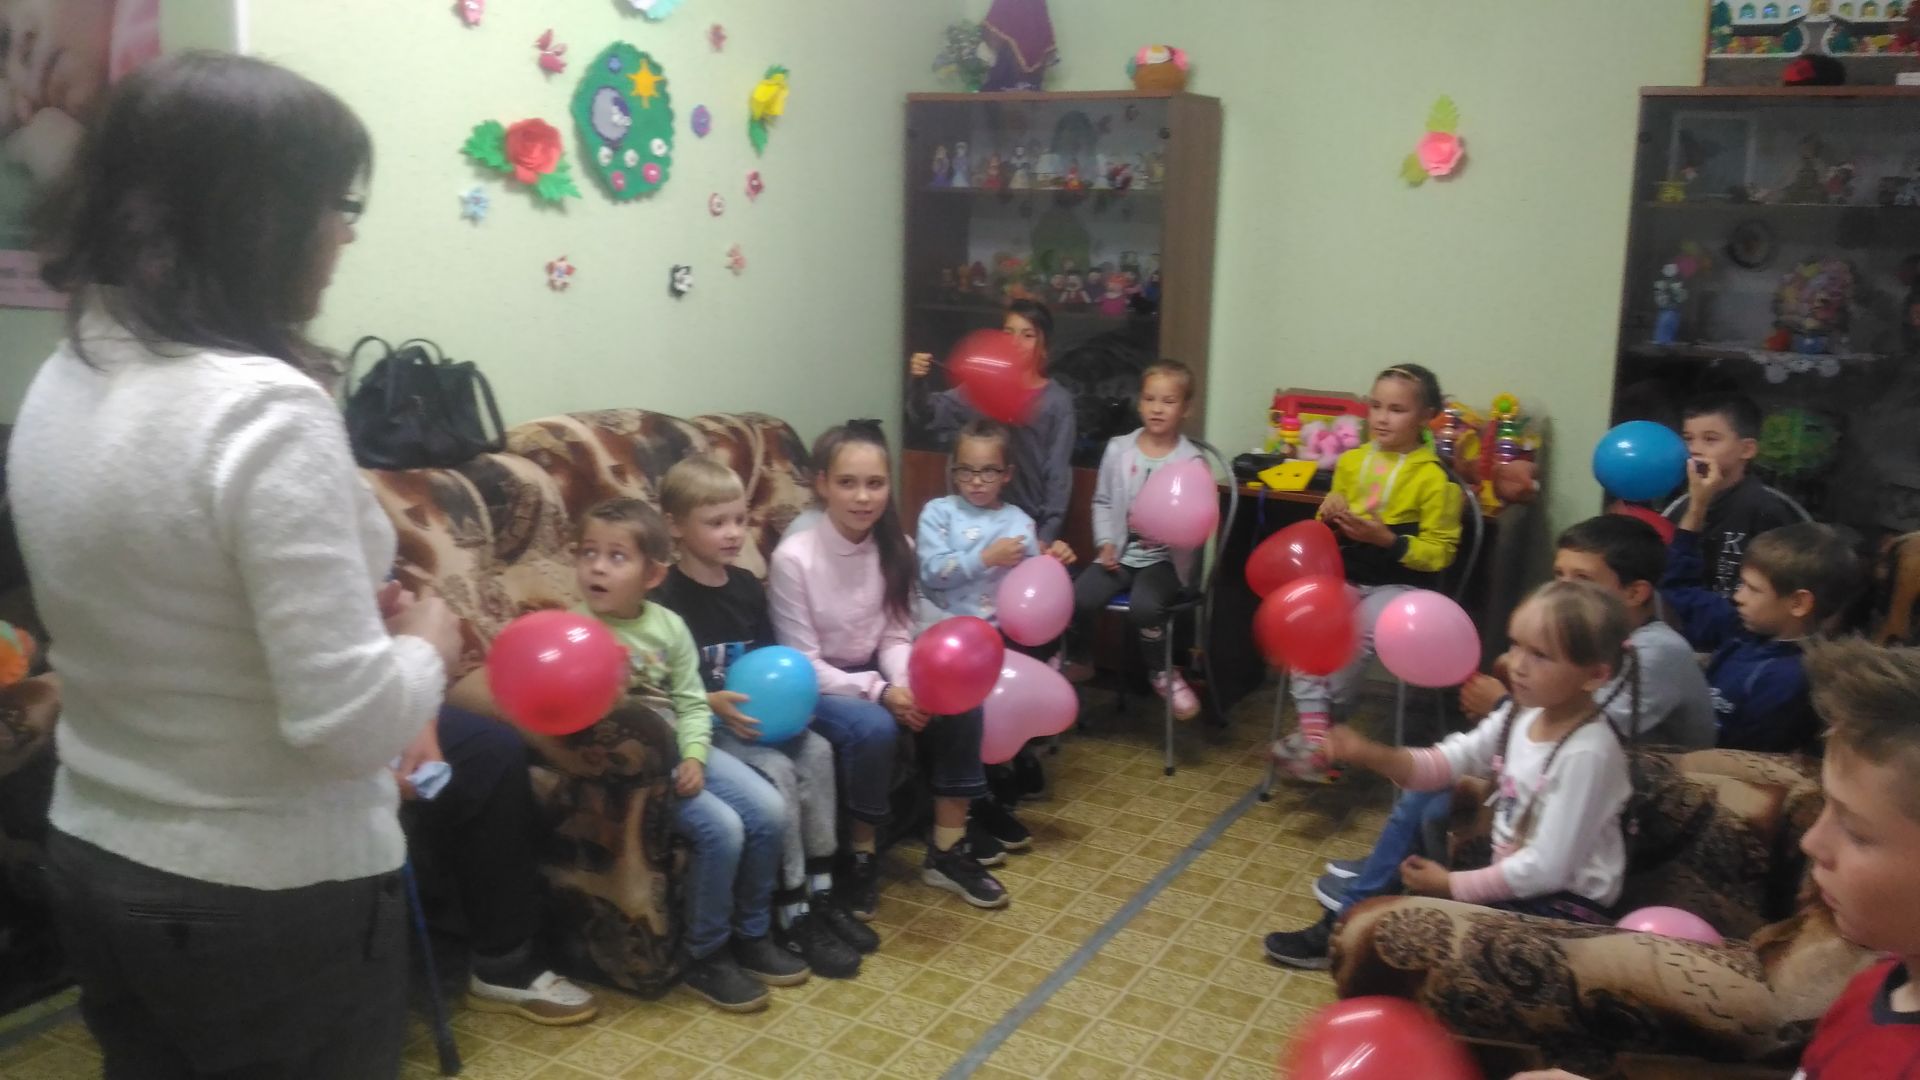 Социальный педагог Центра «Веста» совместно со специалистами, провела развлекательное мероприятие «Мой день рожденья!»